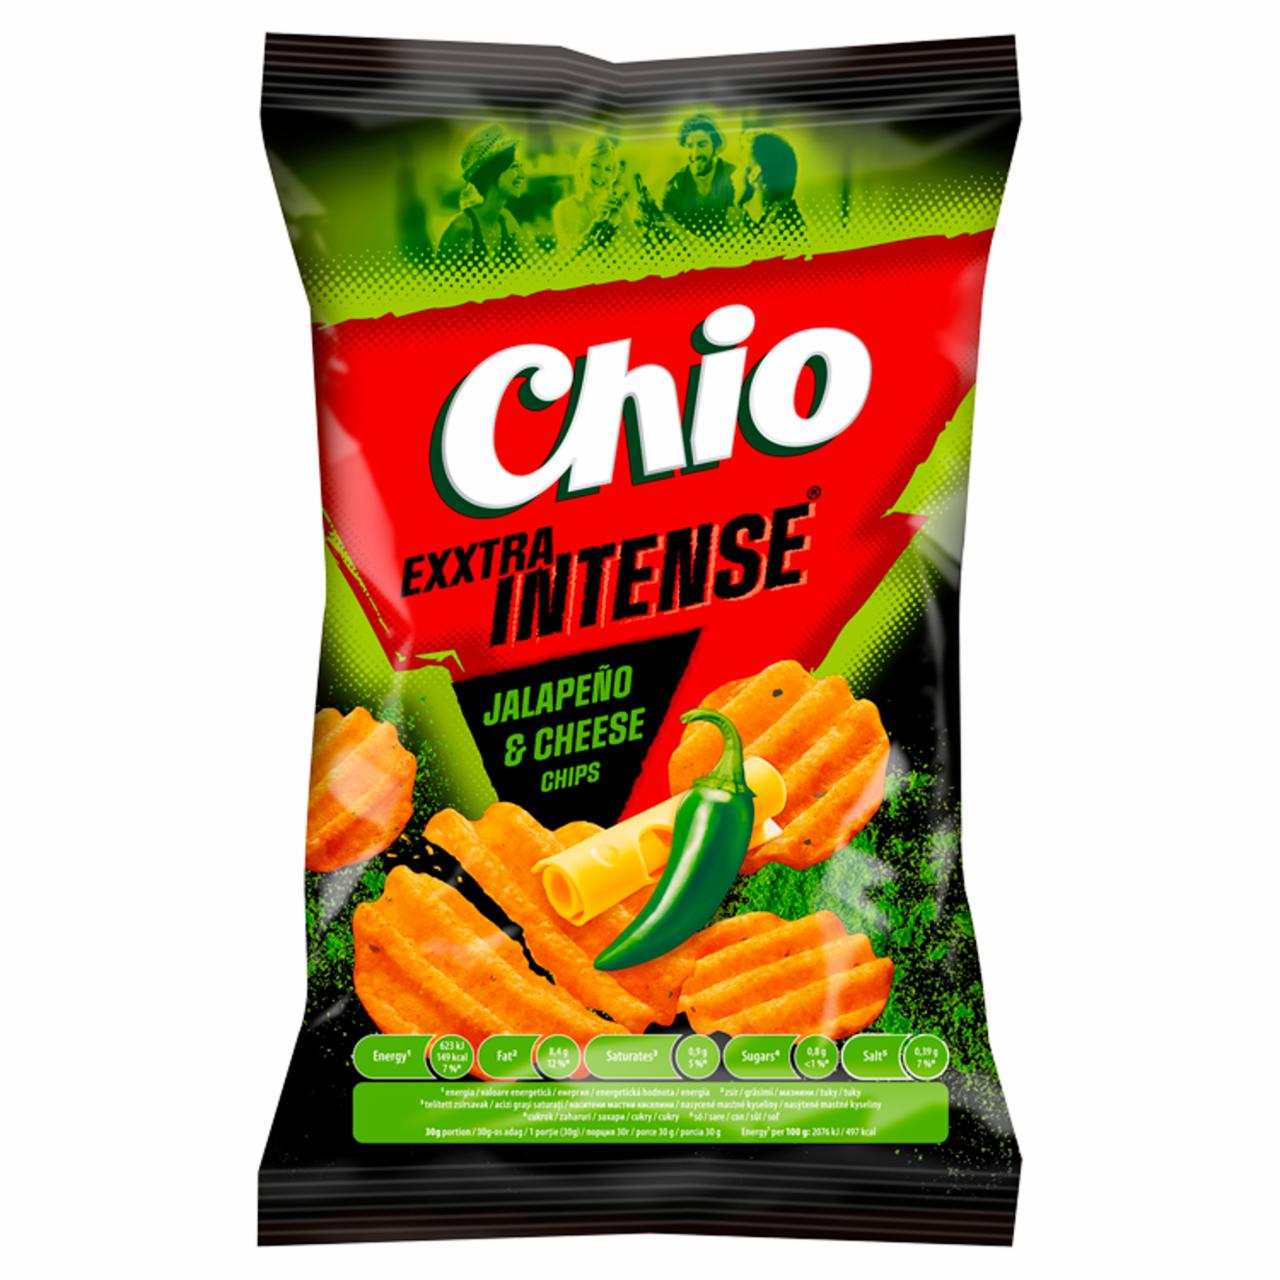 Képek - Chio Exxtra Intense sajt és jalapeño chilli ízű burgonyachips 55 g